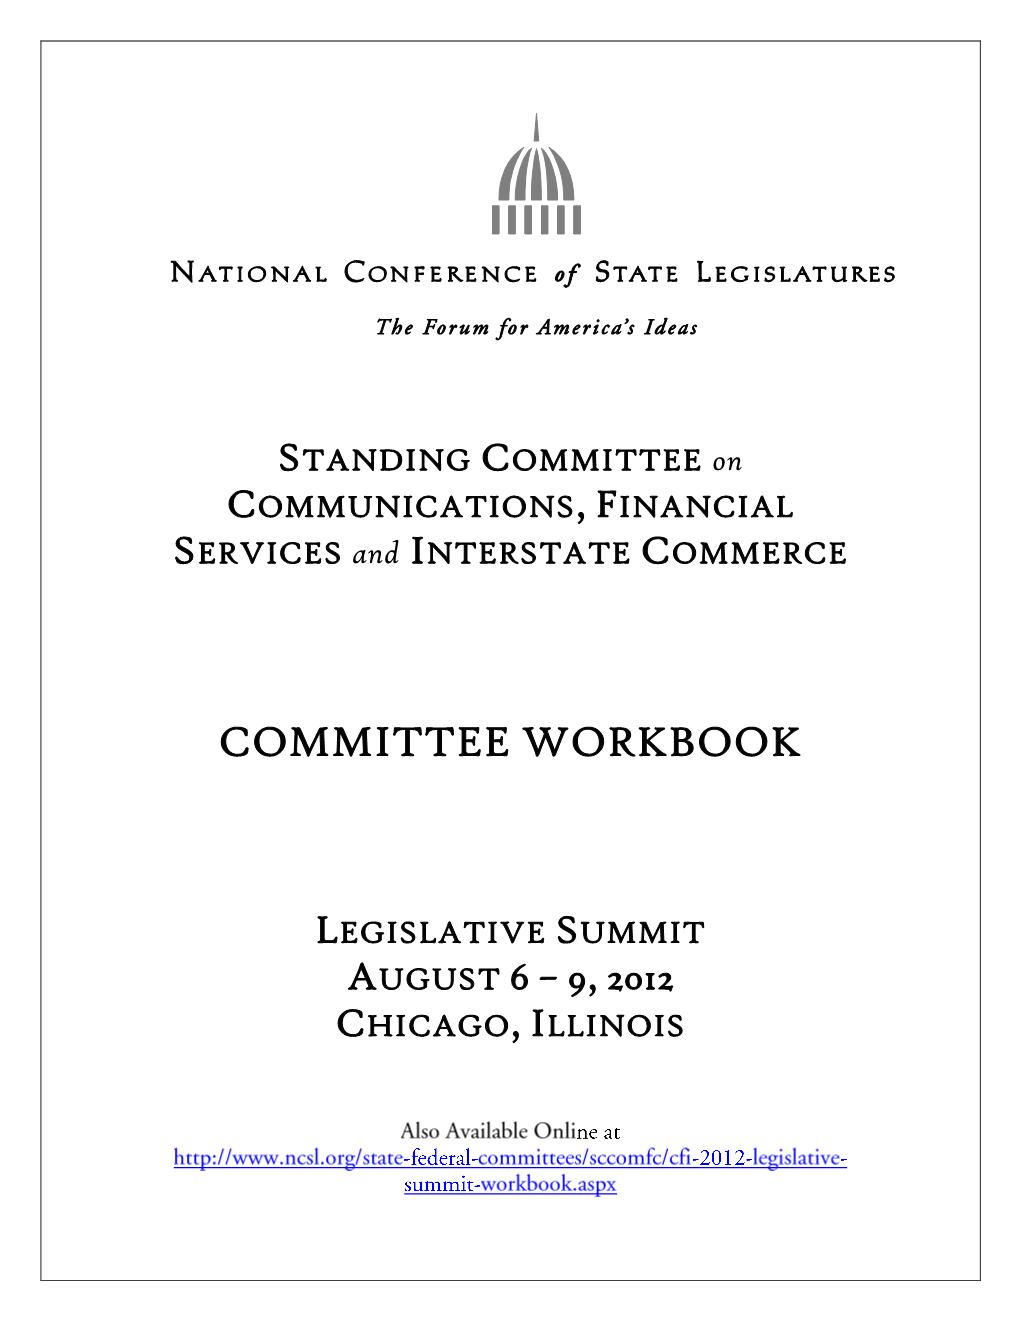 Committee Workbook